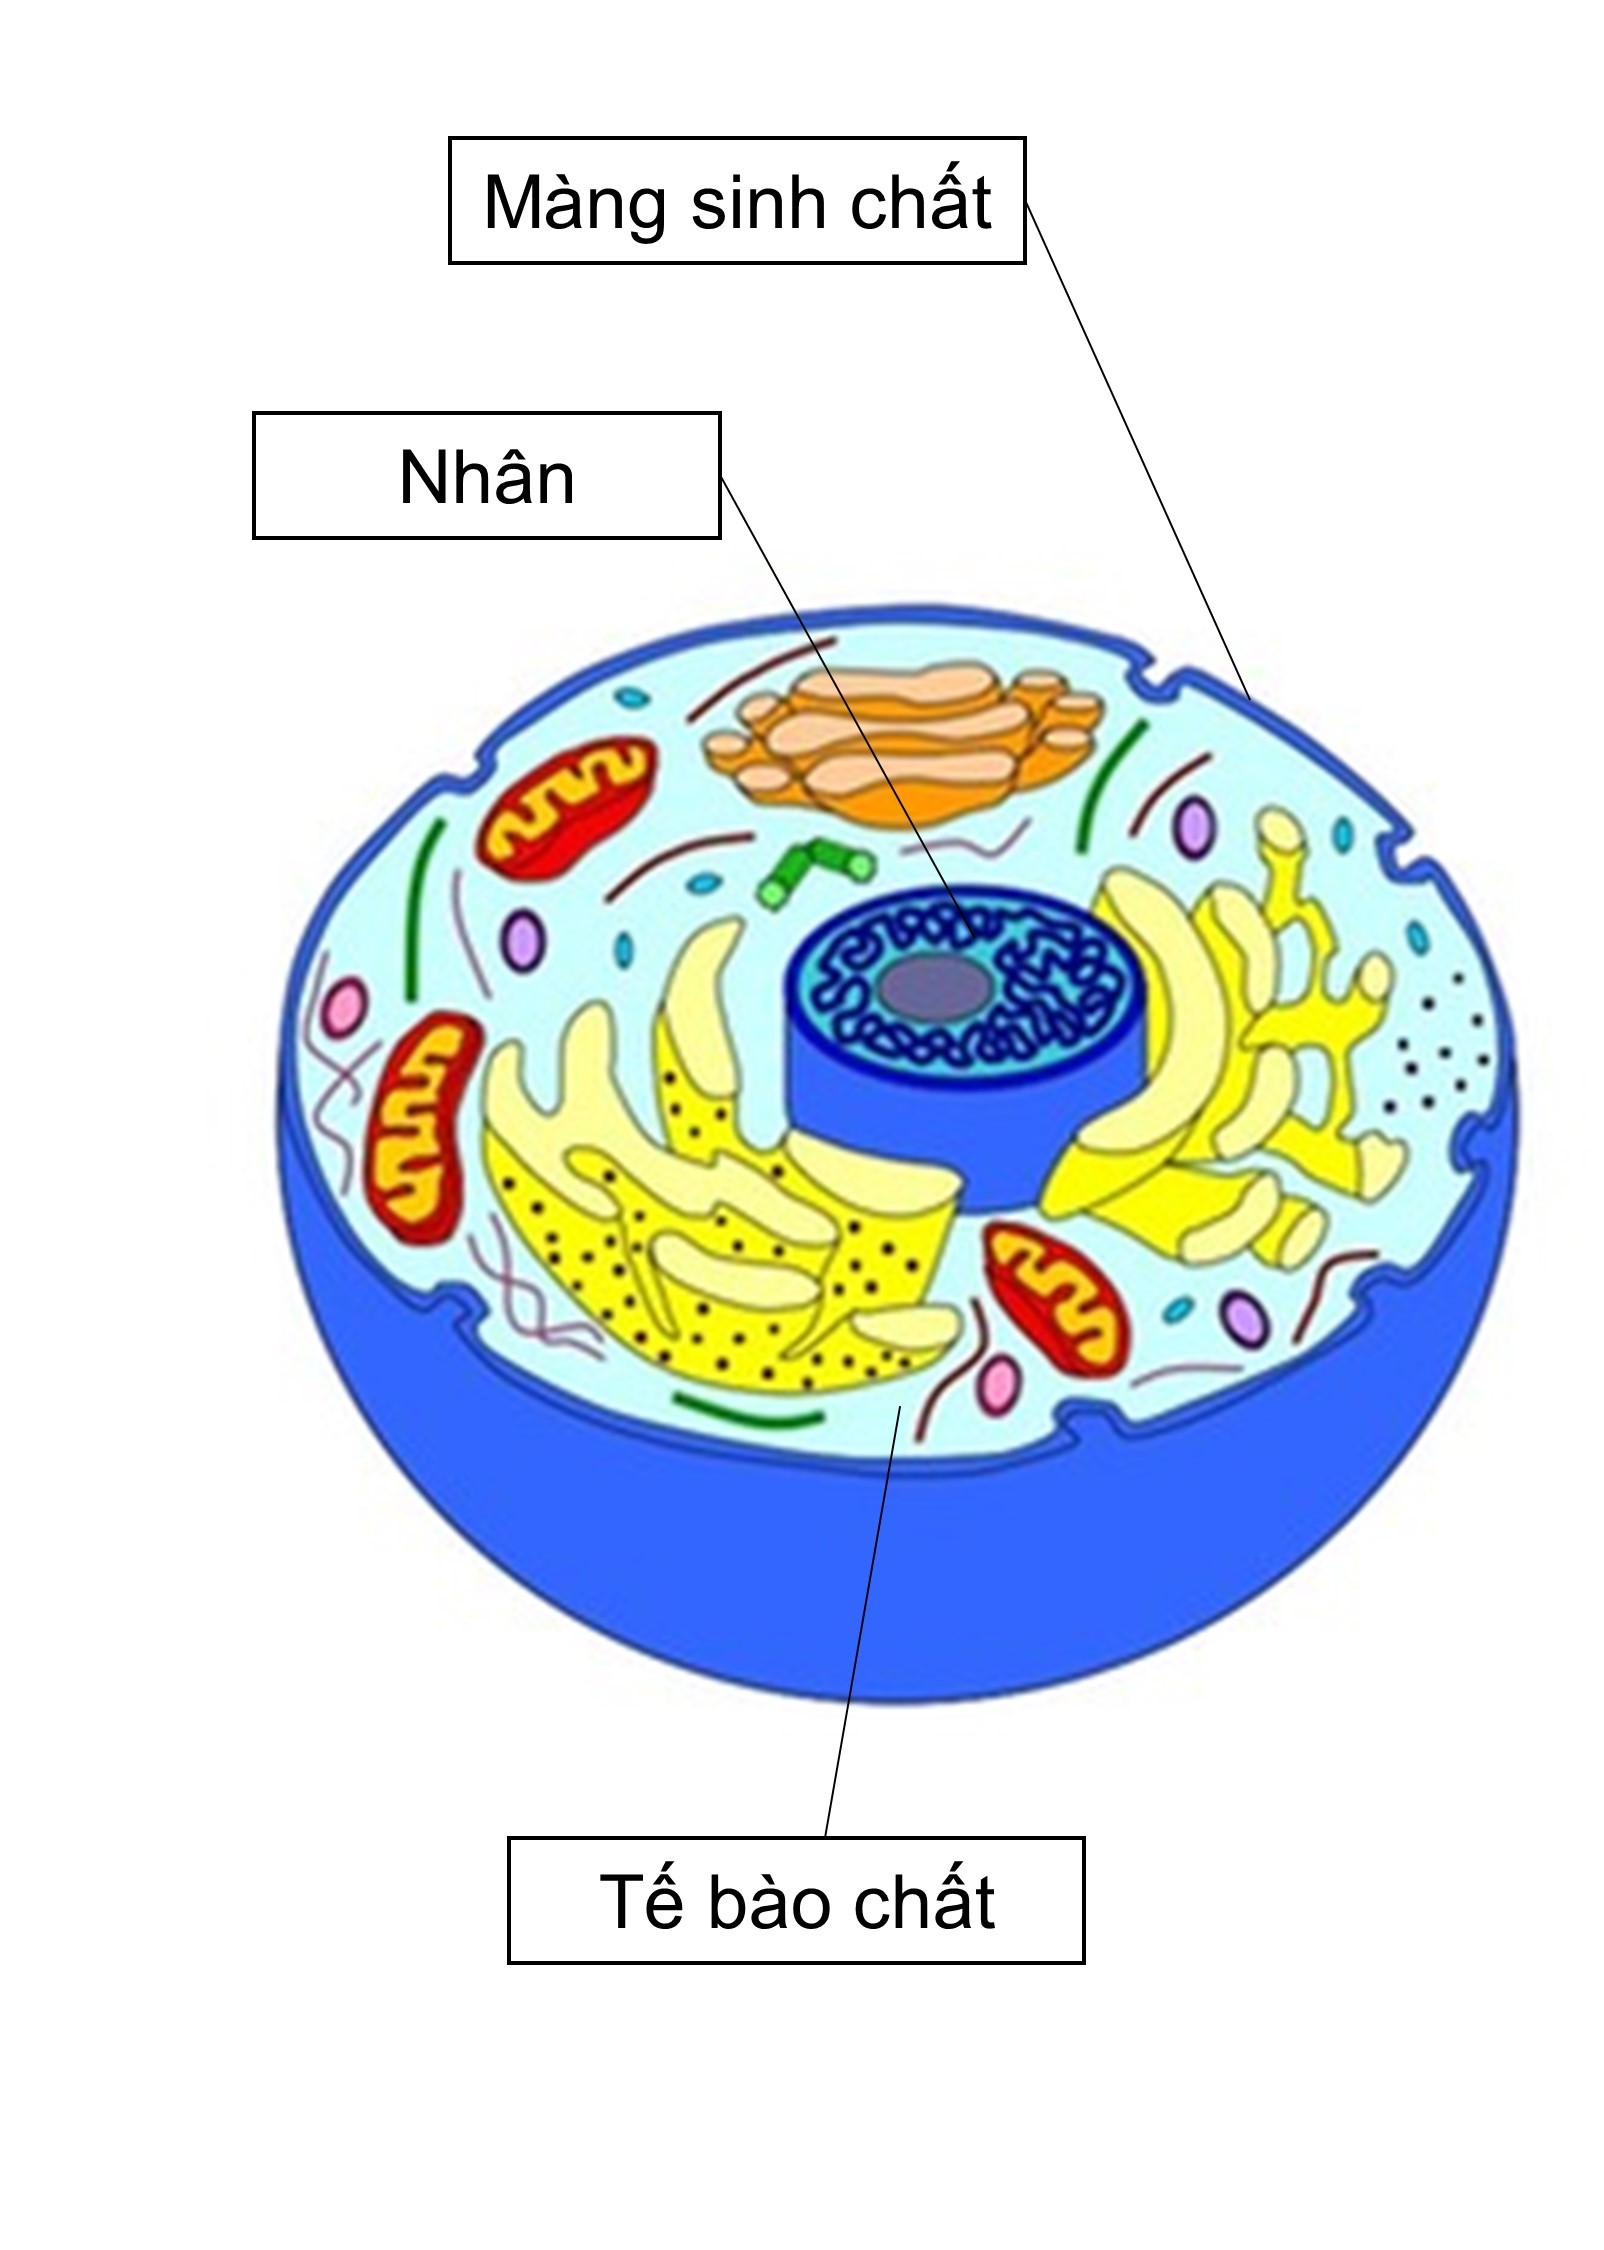 Hãy vẽ hình một tế bào động vật điển hình và chú thích các thành phần cấu  tạo của tế bào